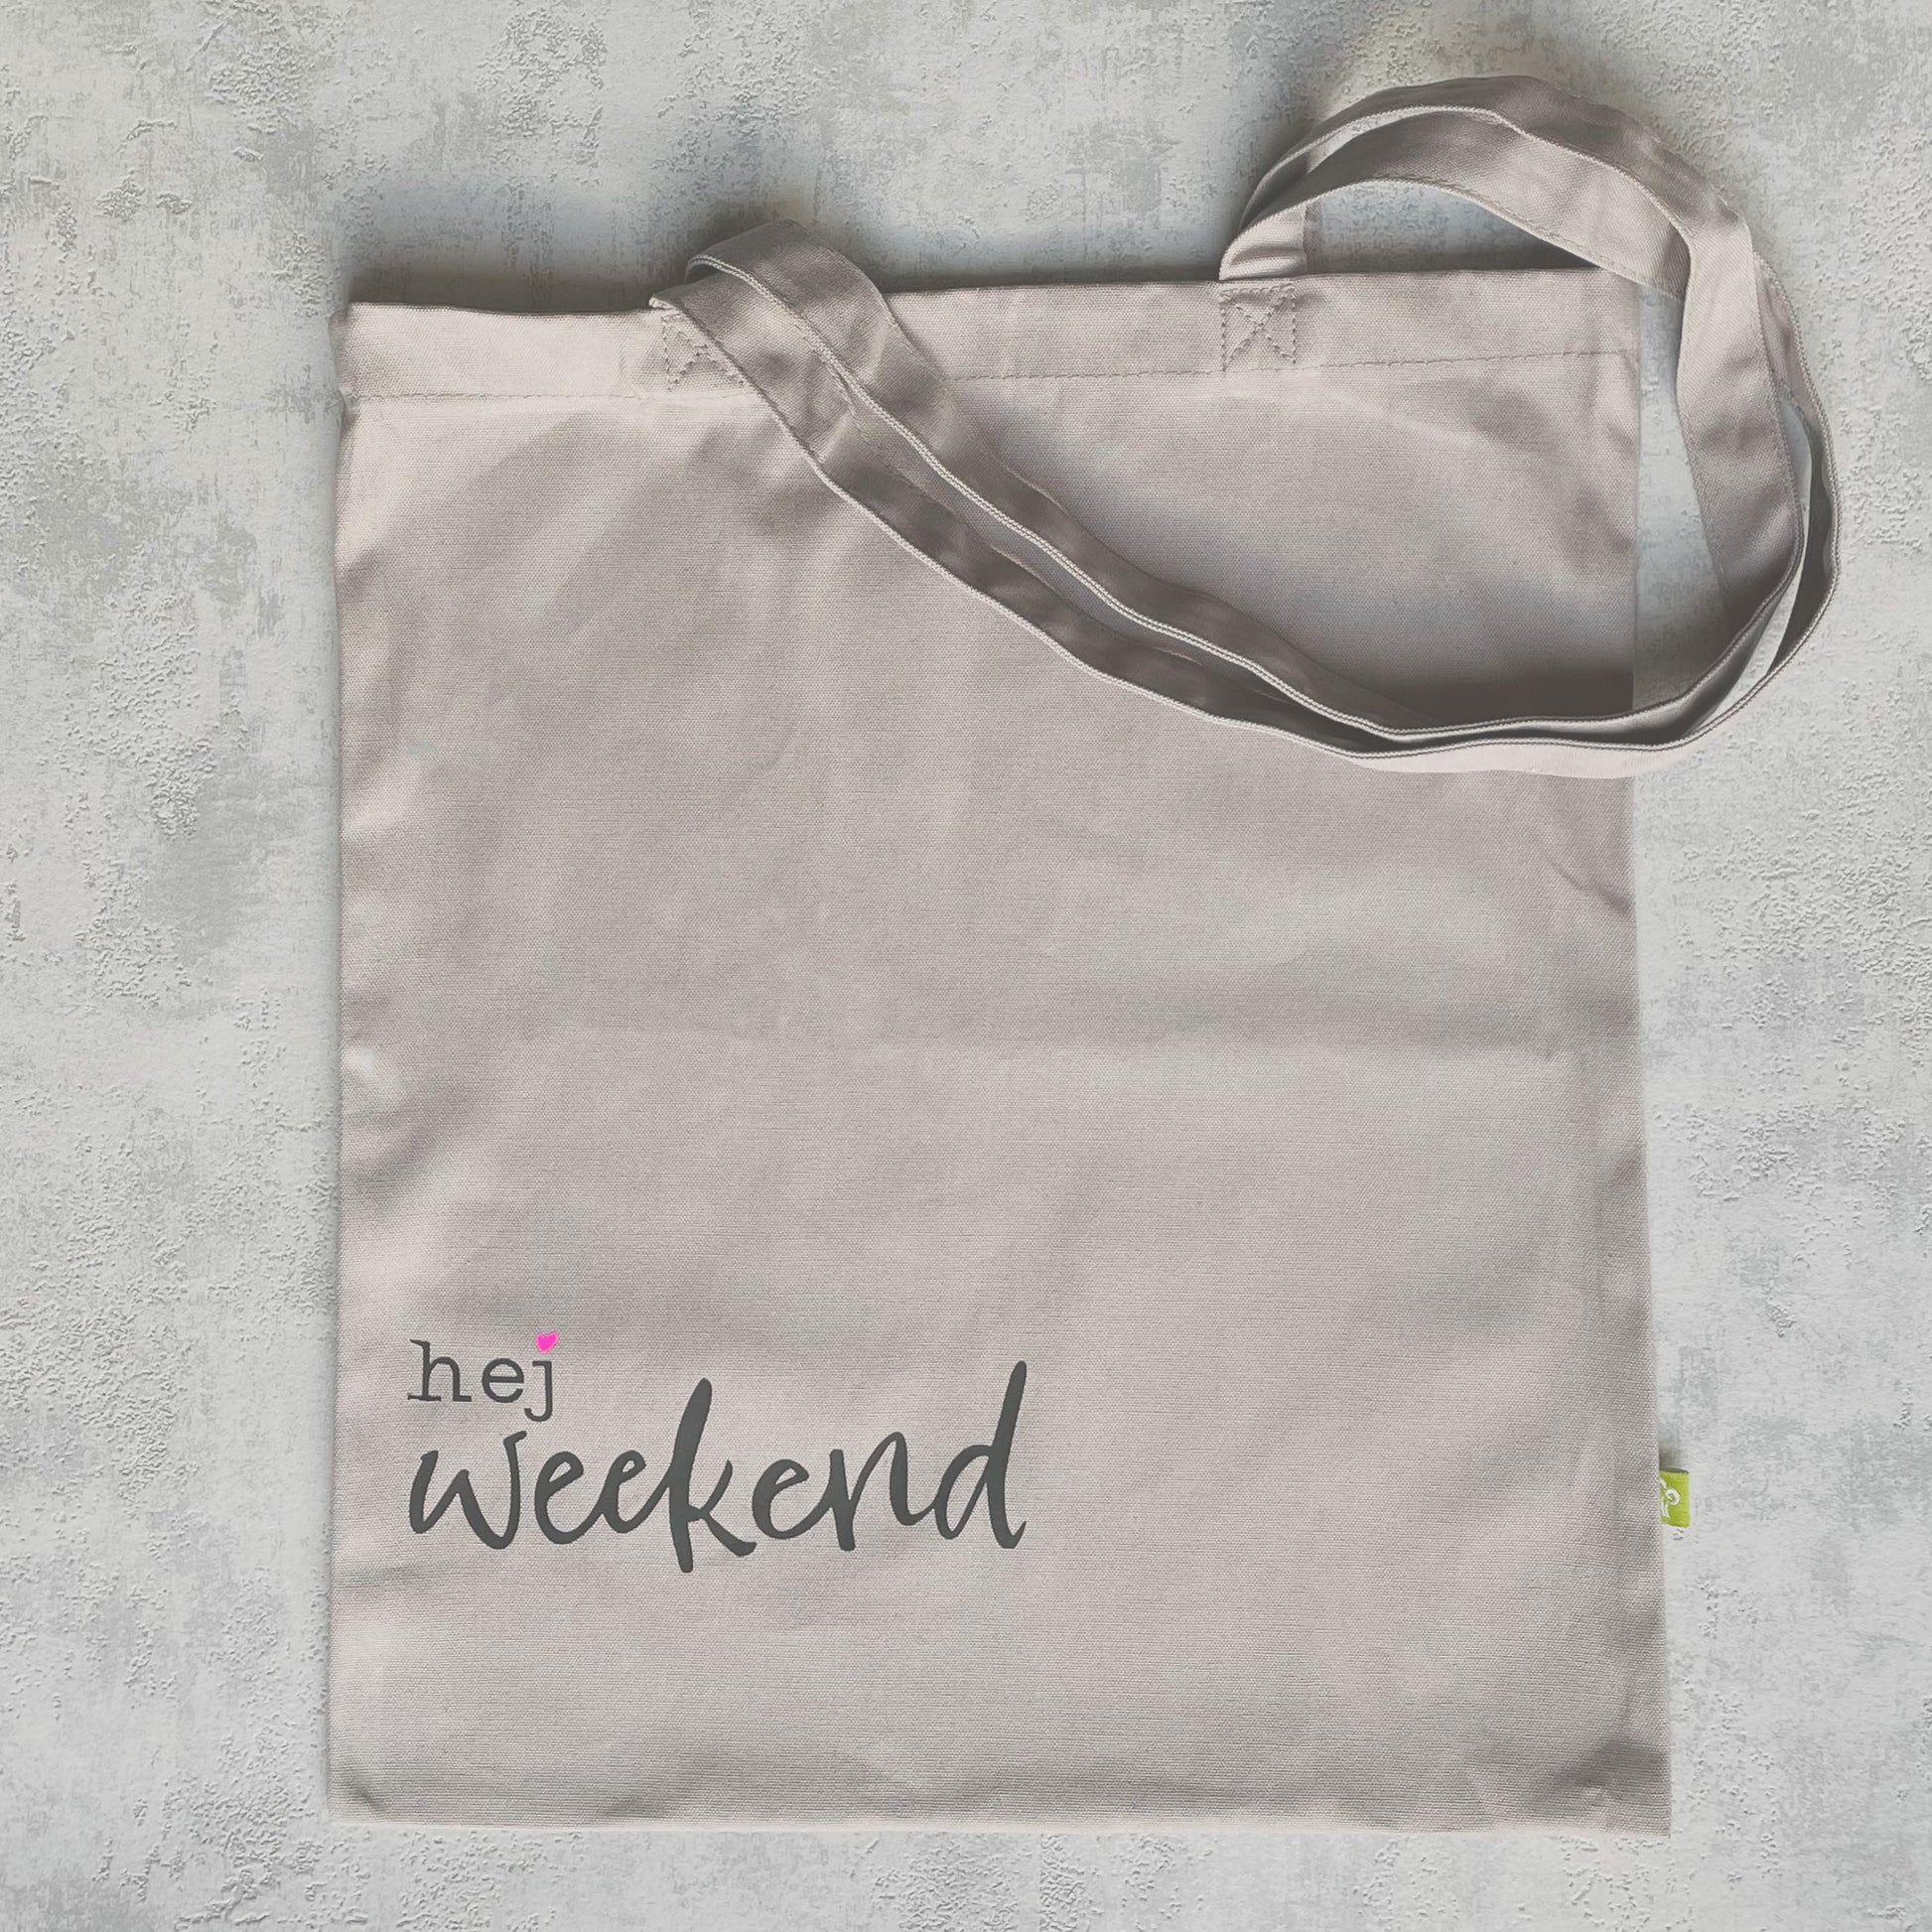 graue Einkaufstragetasche aud Canvas-Stoff (Baumwolle) mit schwarzen Schriftzu "hej weekend" mit neonpinkem Herz.